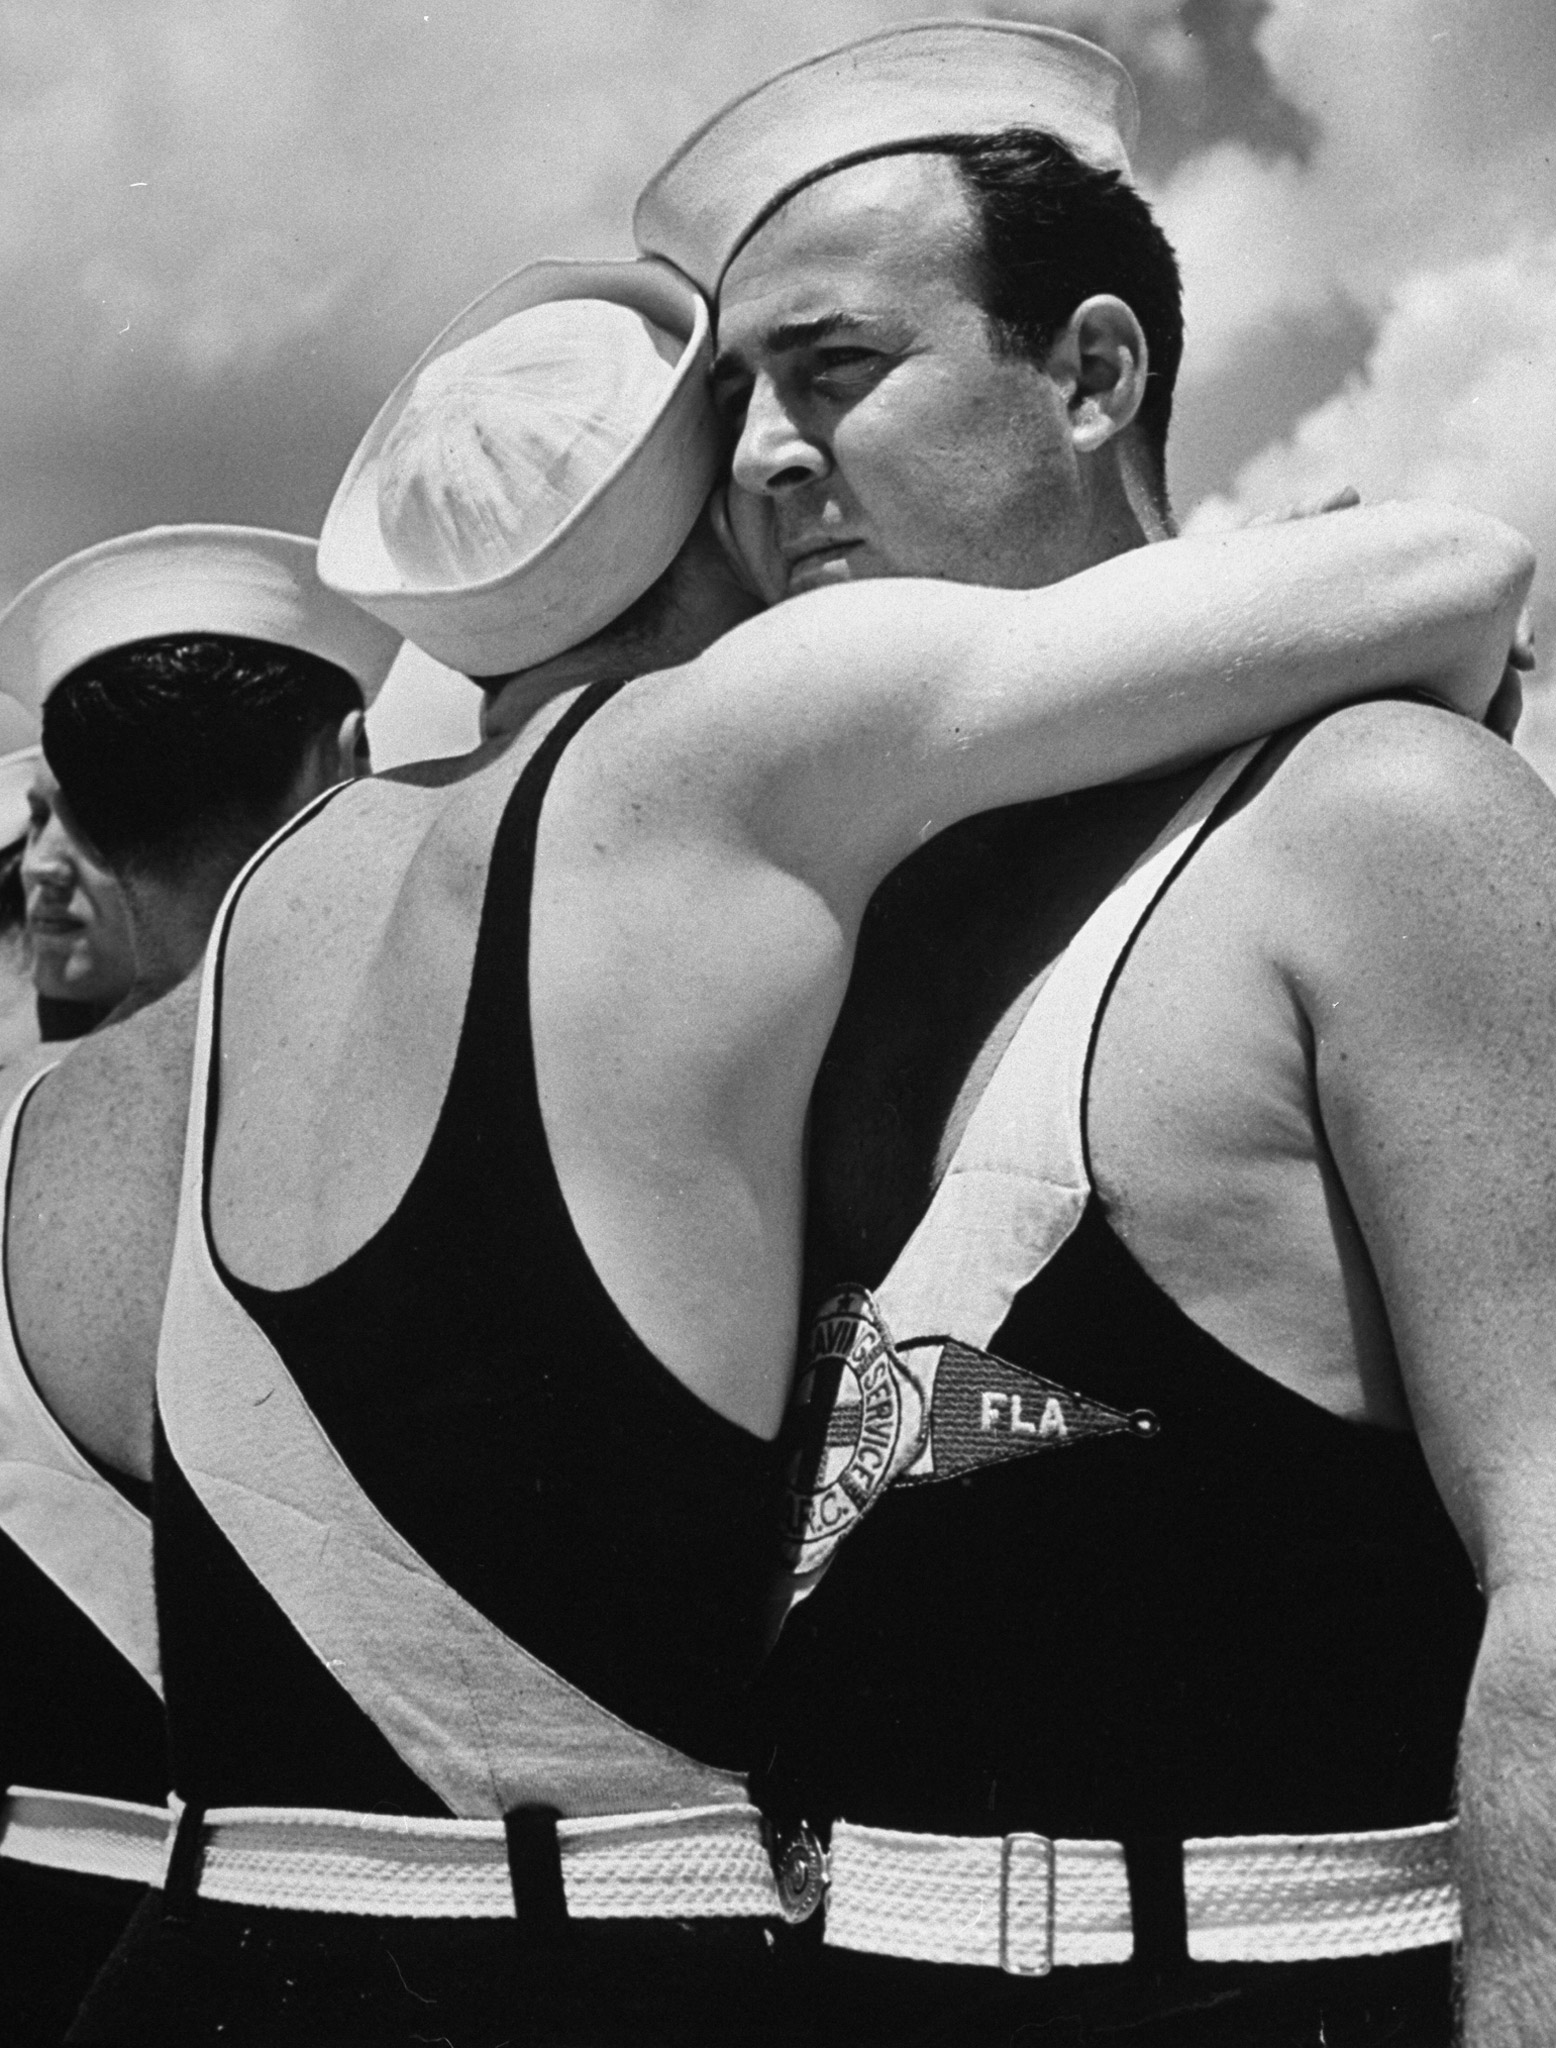 Two lifeguards hugging, Florida, 1939.